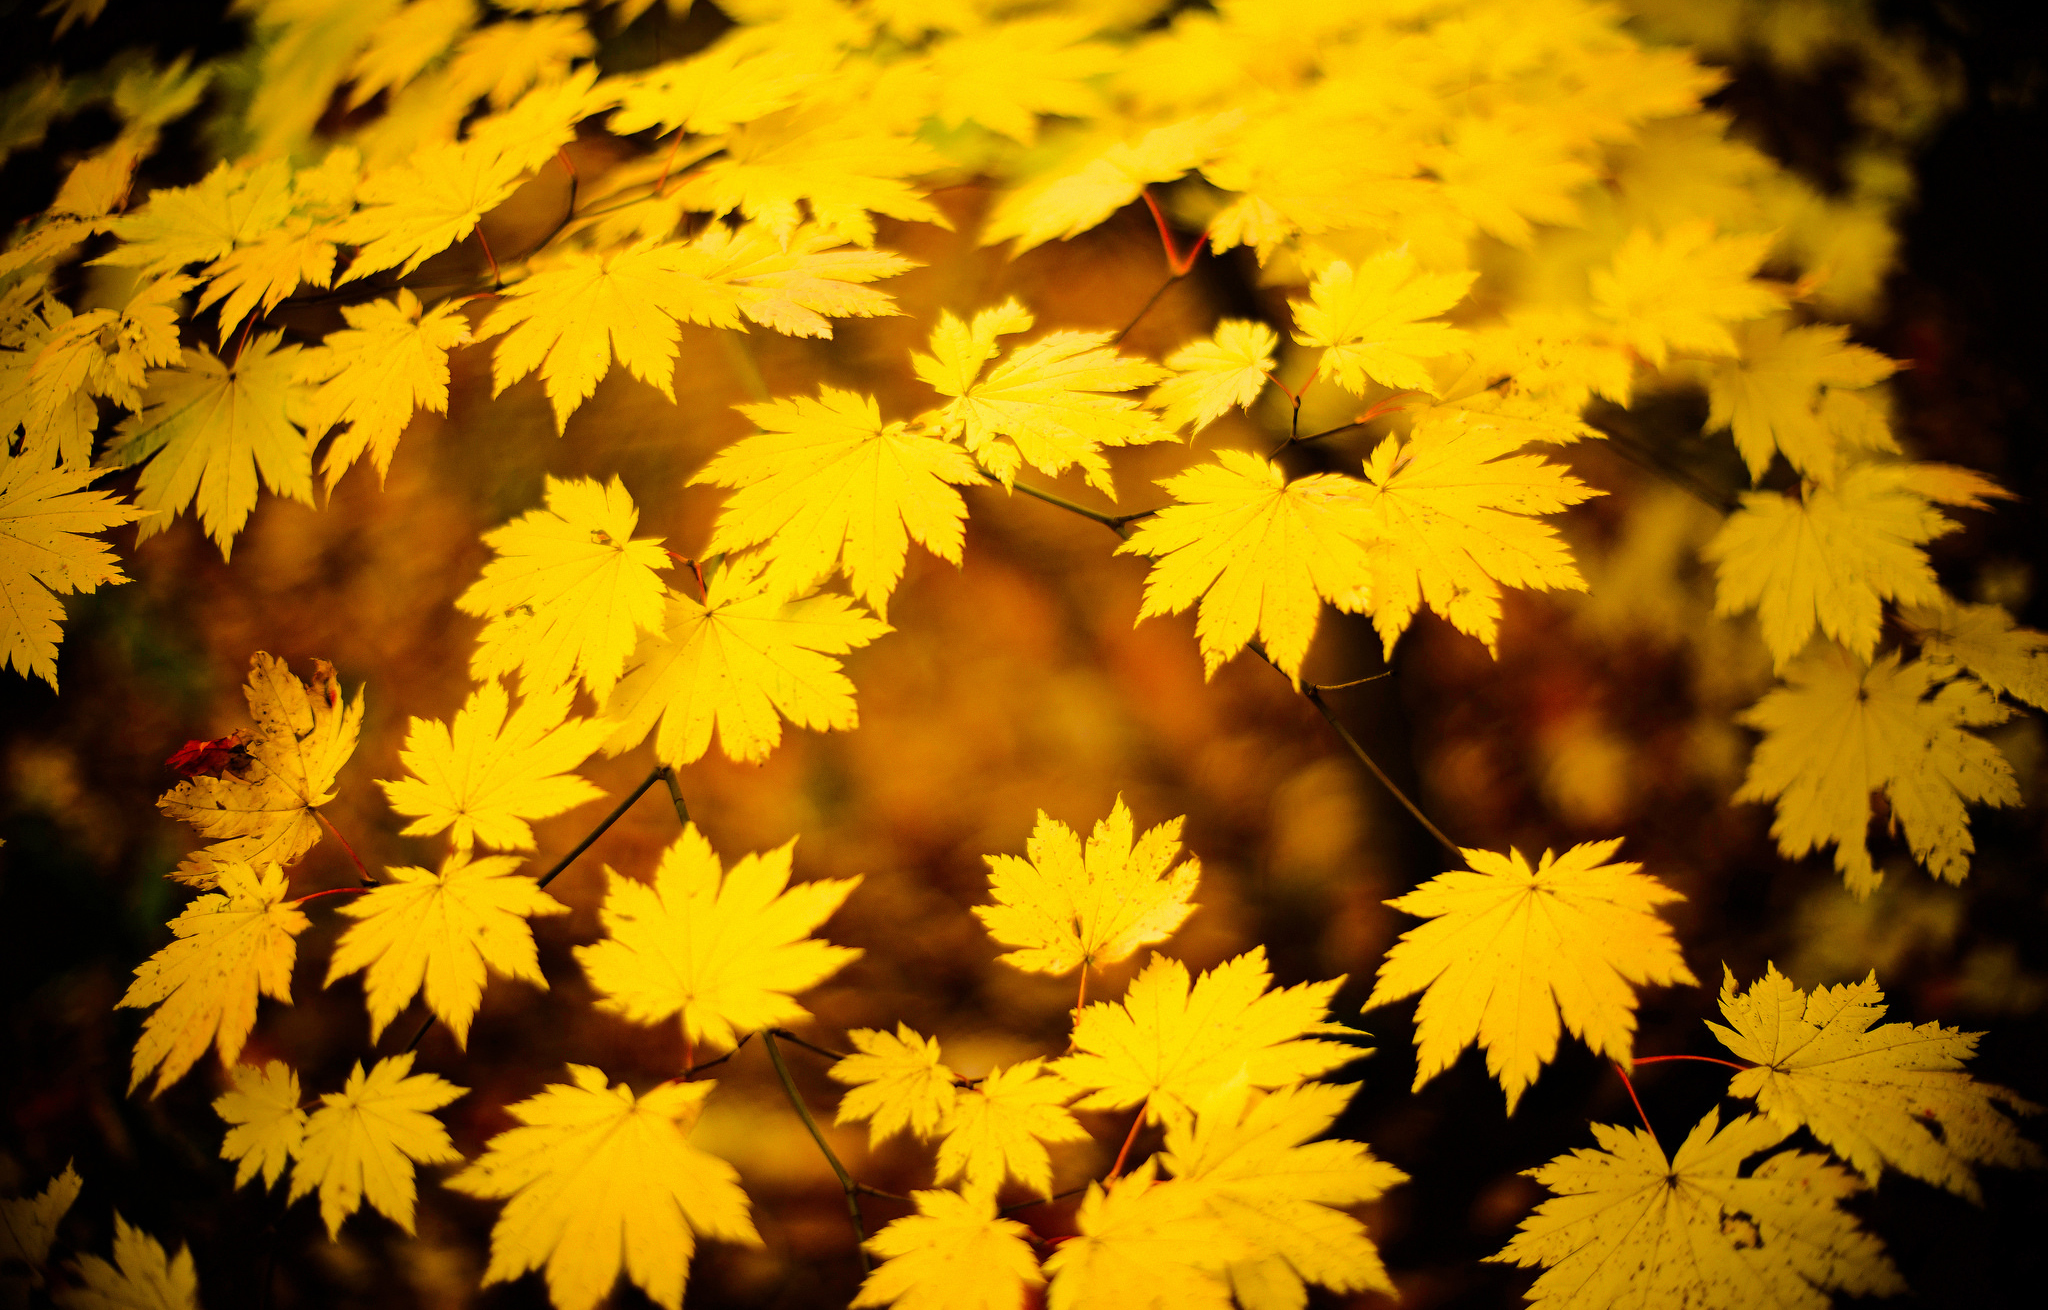 Листья желтые по краям. Желтый лист. Желтая листва. Осень желтые листья. Жёлтый лист осенний.